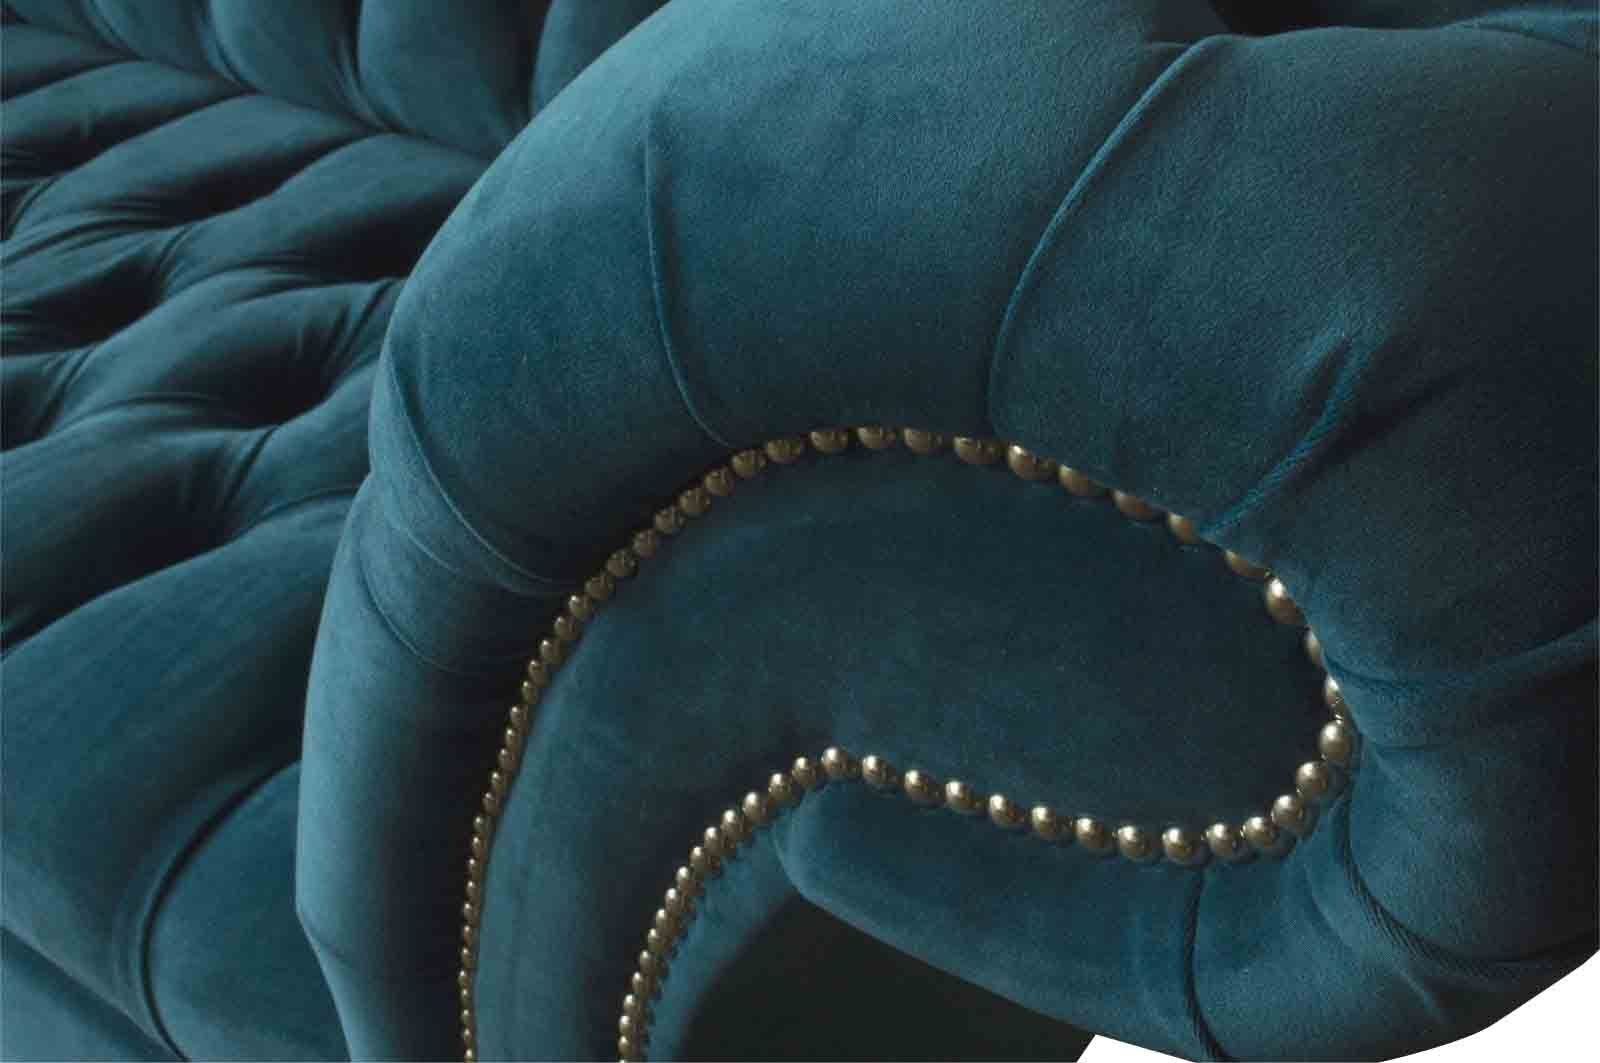 Made Polster Sofa JVmoebel Sofas Dreisitzer 3 Europe Design Textil Neu, Sofa In Sitzer Luxus Möbel